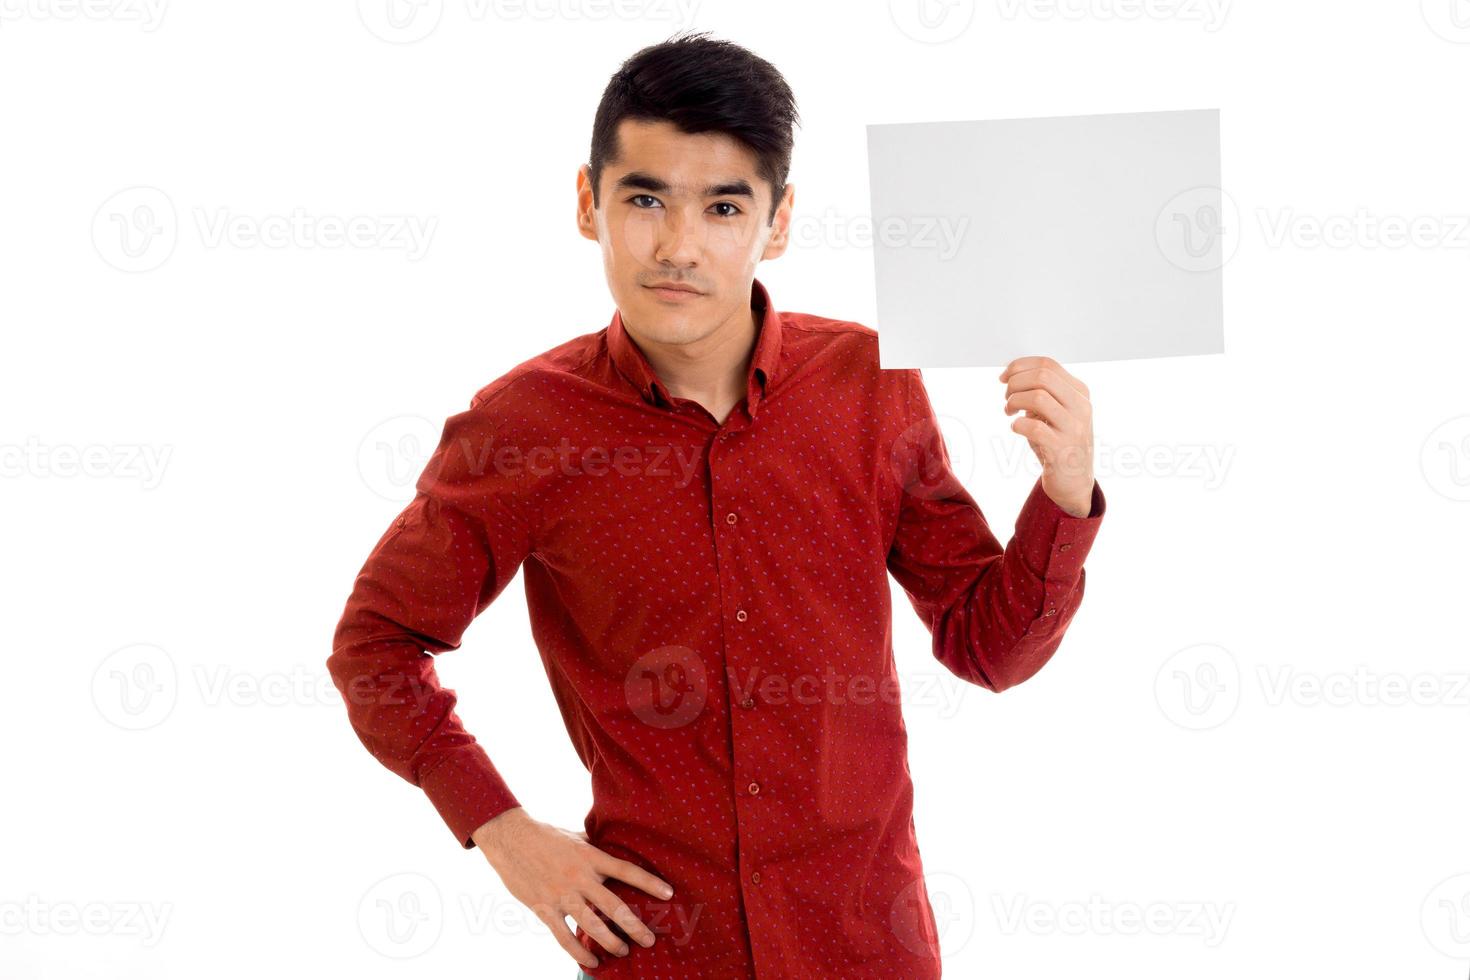 Un joven elegante con camisa roja y una pancarta vacía en las manos posando aislado de fondo blanco foto